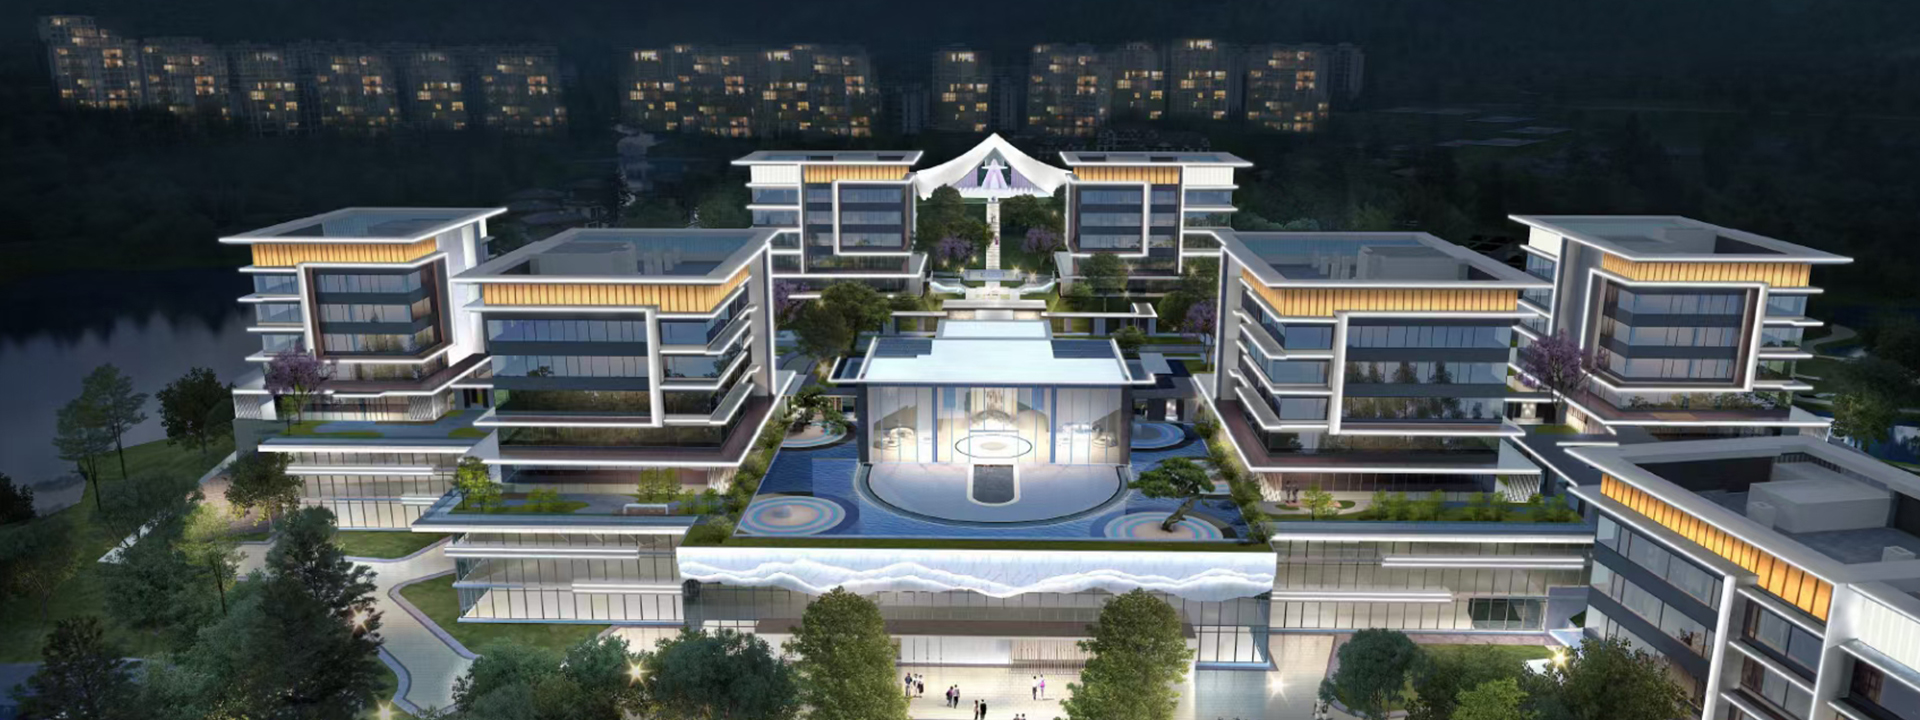 重庆御湖新加坡社区（28#酒店地块）5#、6#亮化照明工程